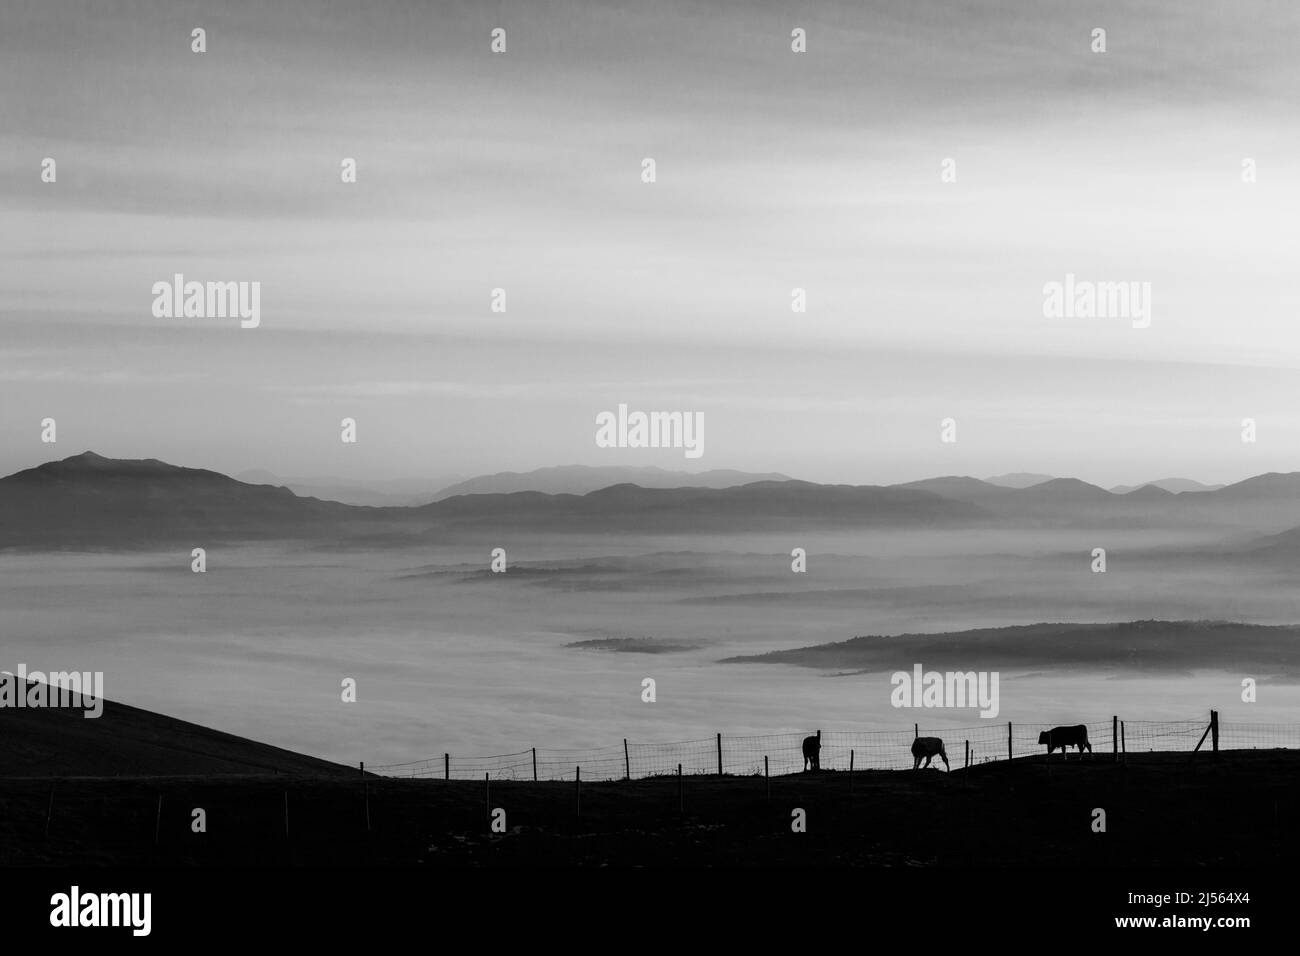 Vaches pasteurs sur une montagne, au-dessus d'une mer de brouillard au coucher du soleil Banque D'Images